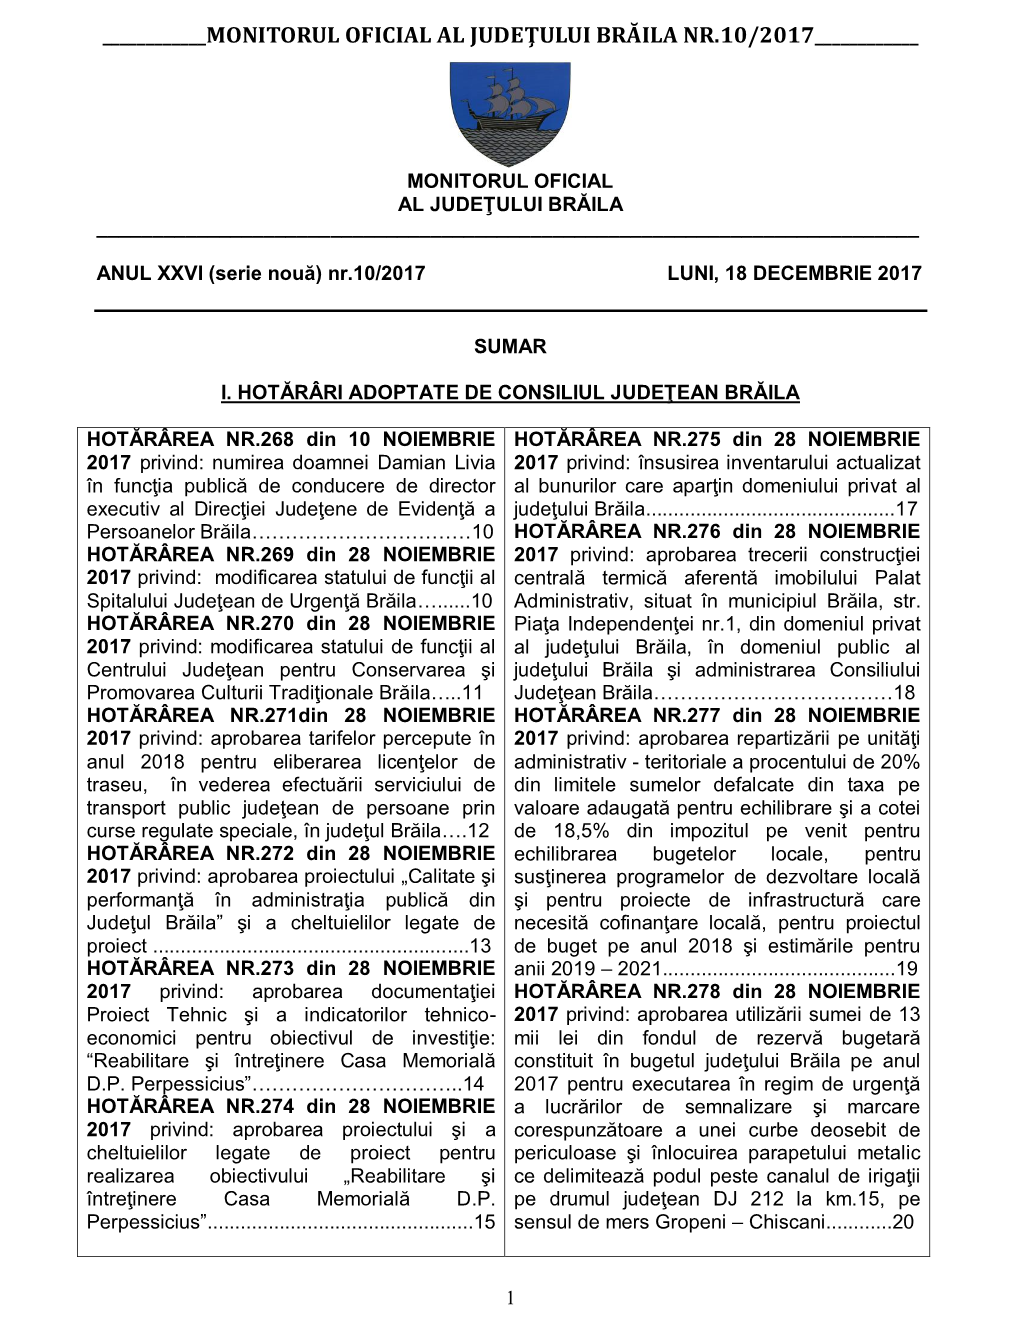 Monitorul Oficial Al Judeţului Brăila Nr.8/2017